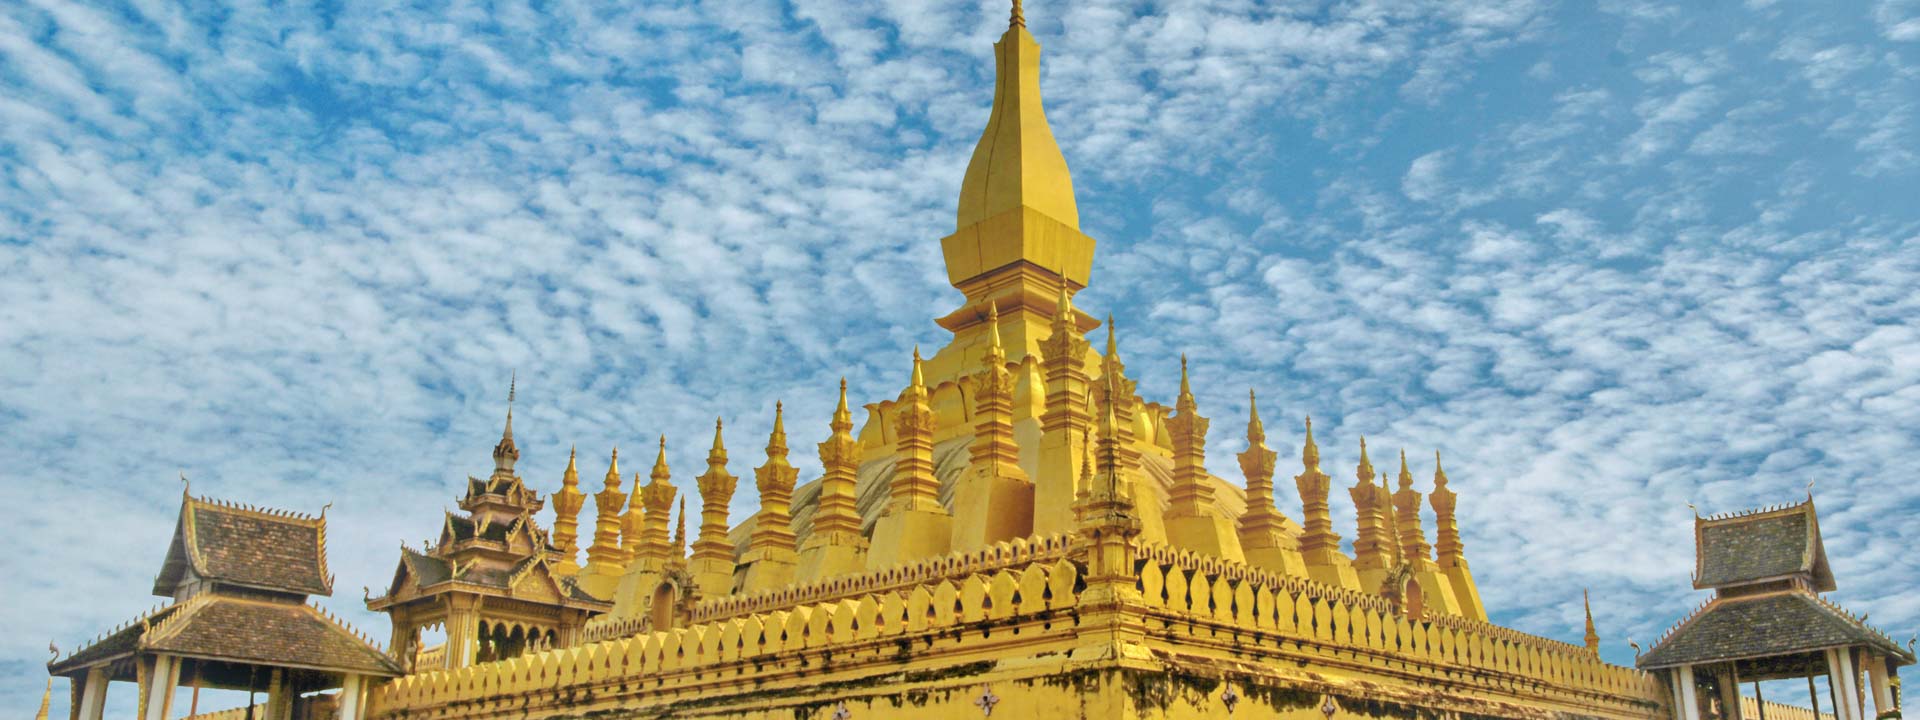 Vietnam Laos Cambodia Thailand Tour 22 days